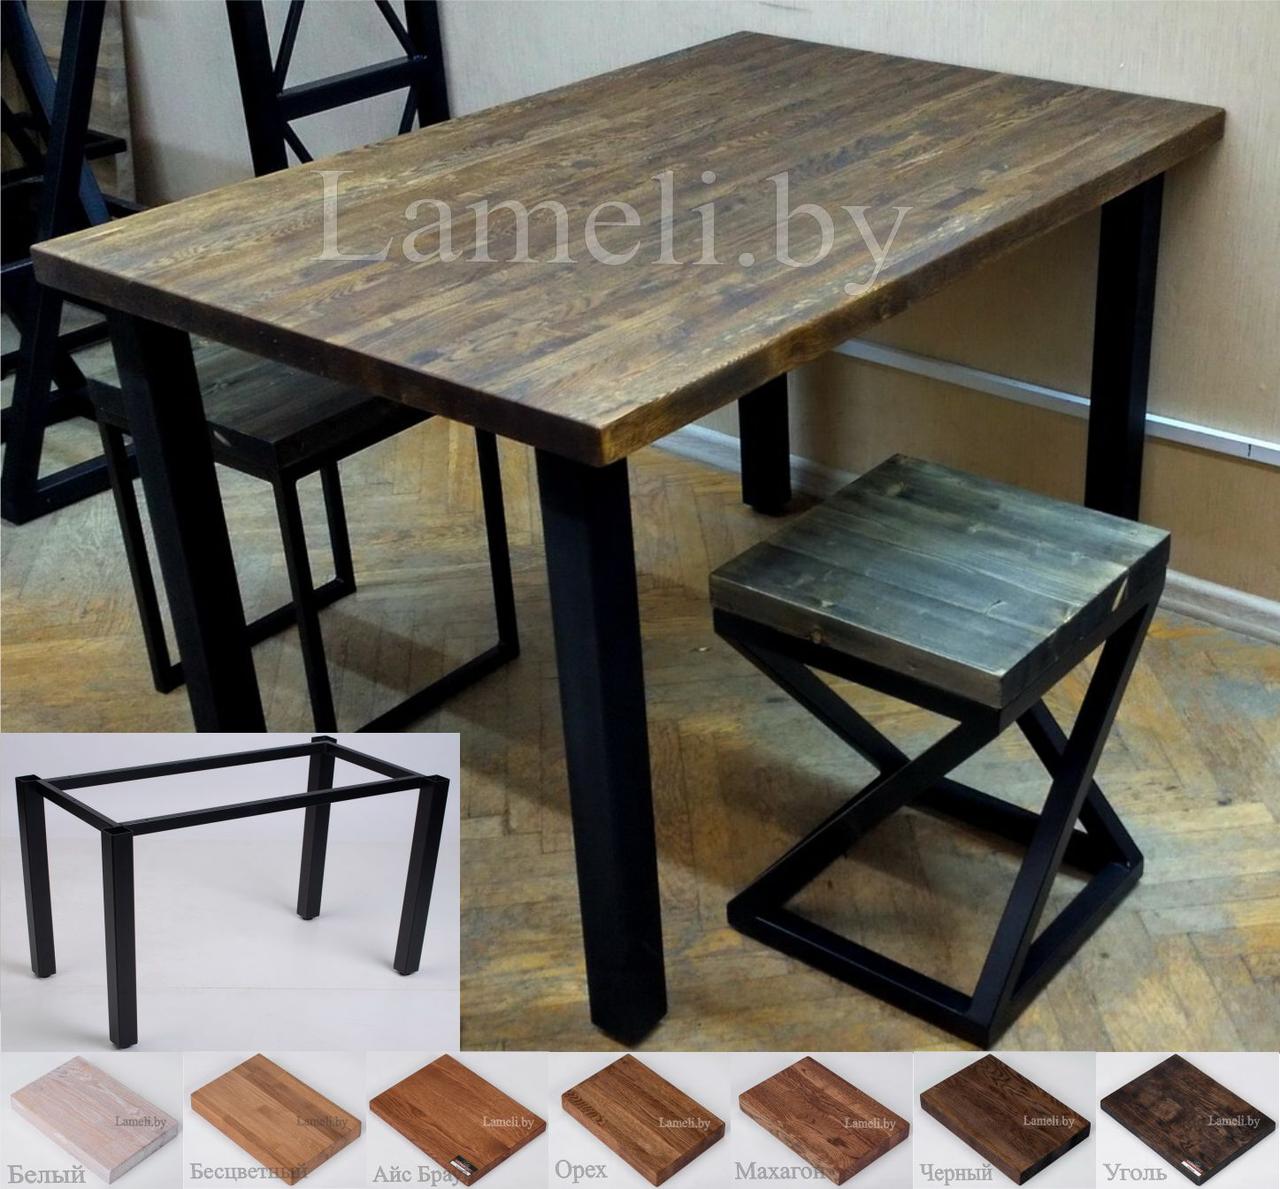 Стол кухонный на металлокаркасе серии "Т" из постформинга, массива дуба или ЛДСП с выбором размера и цвета